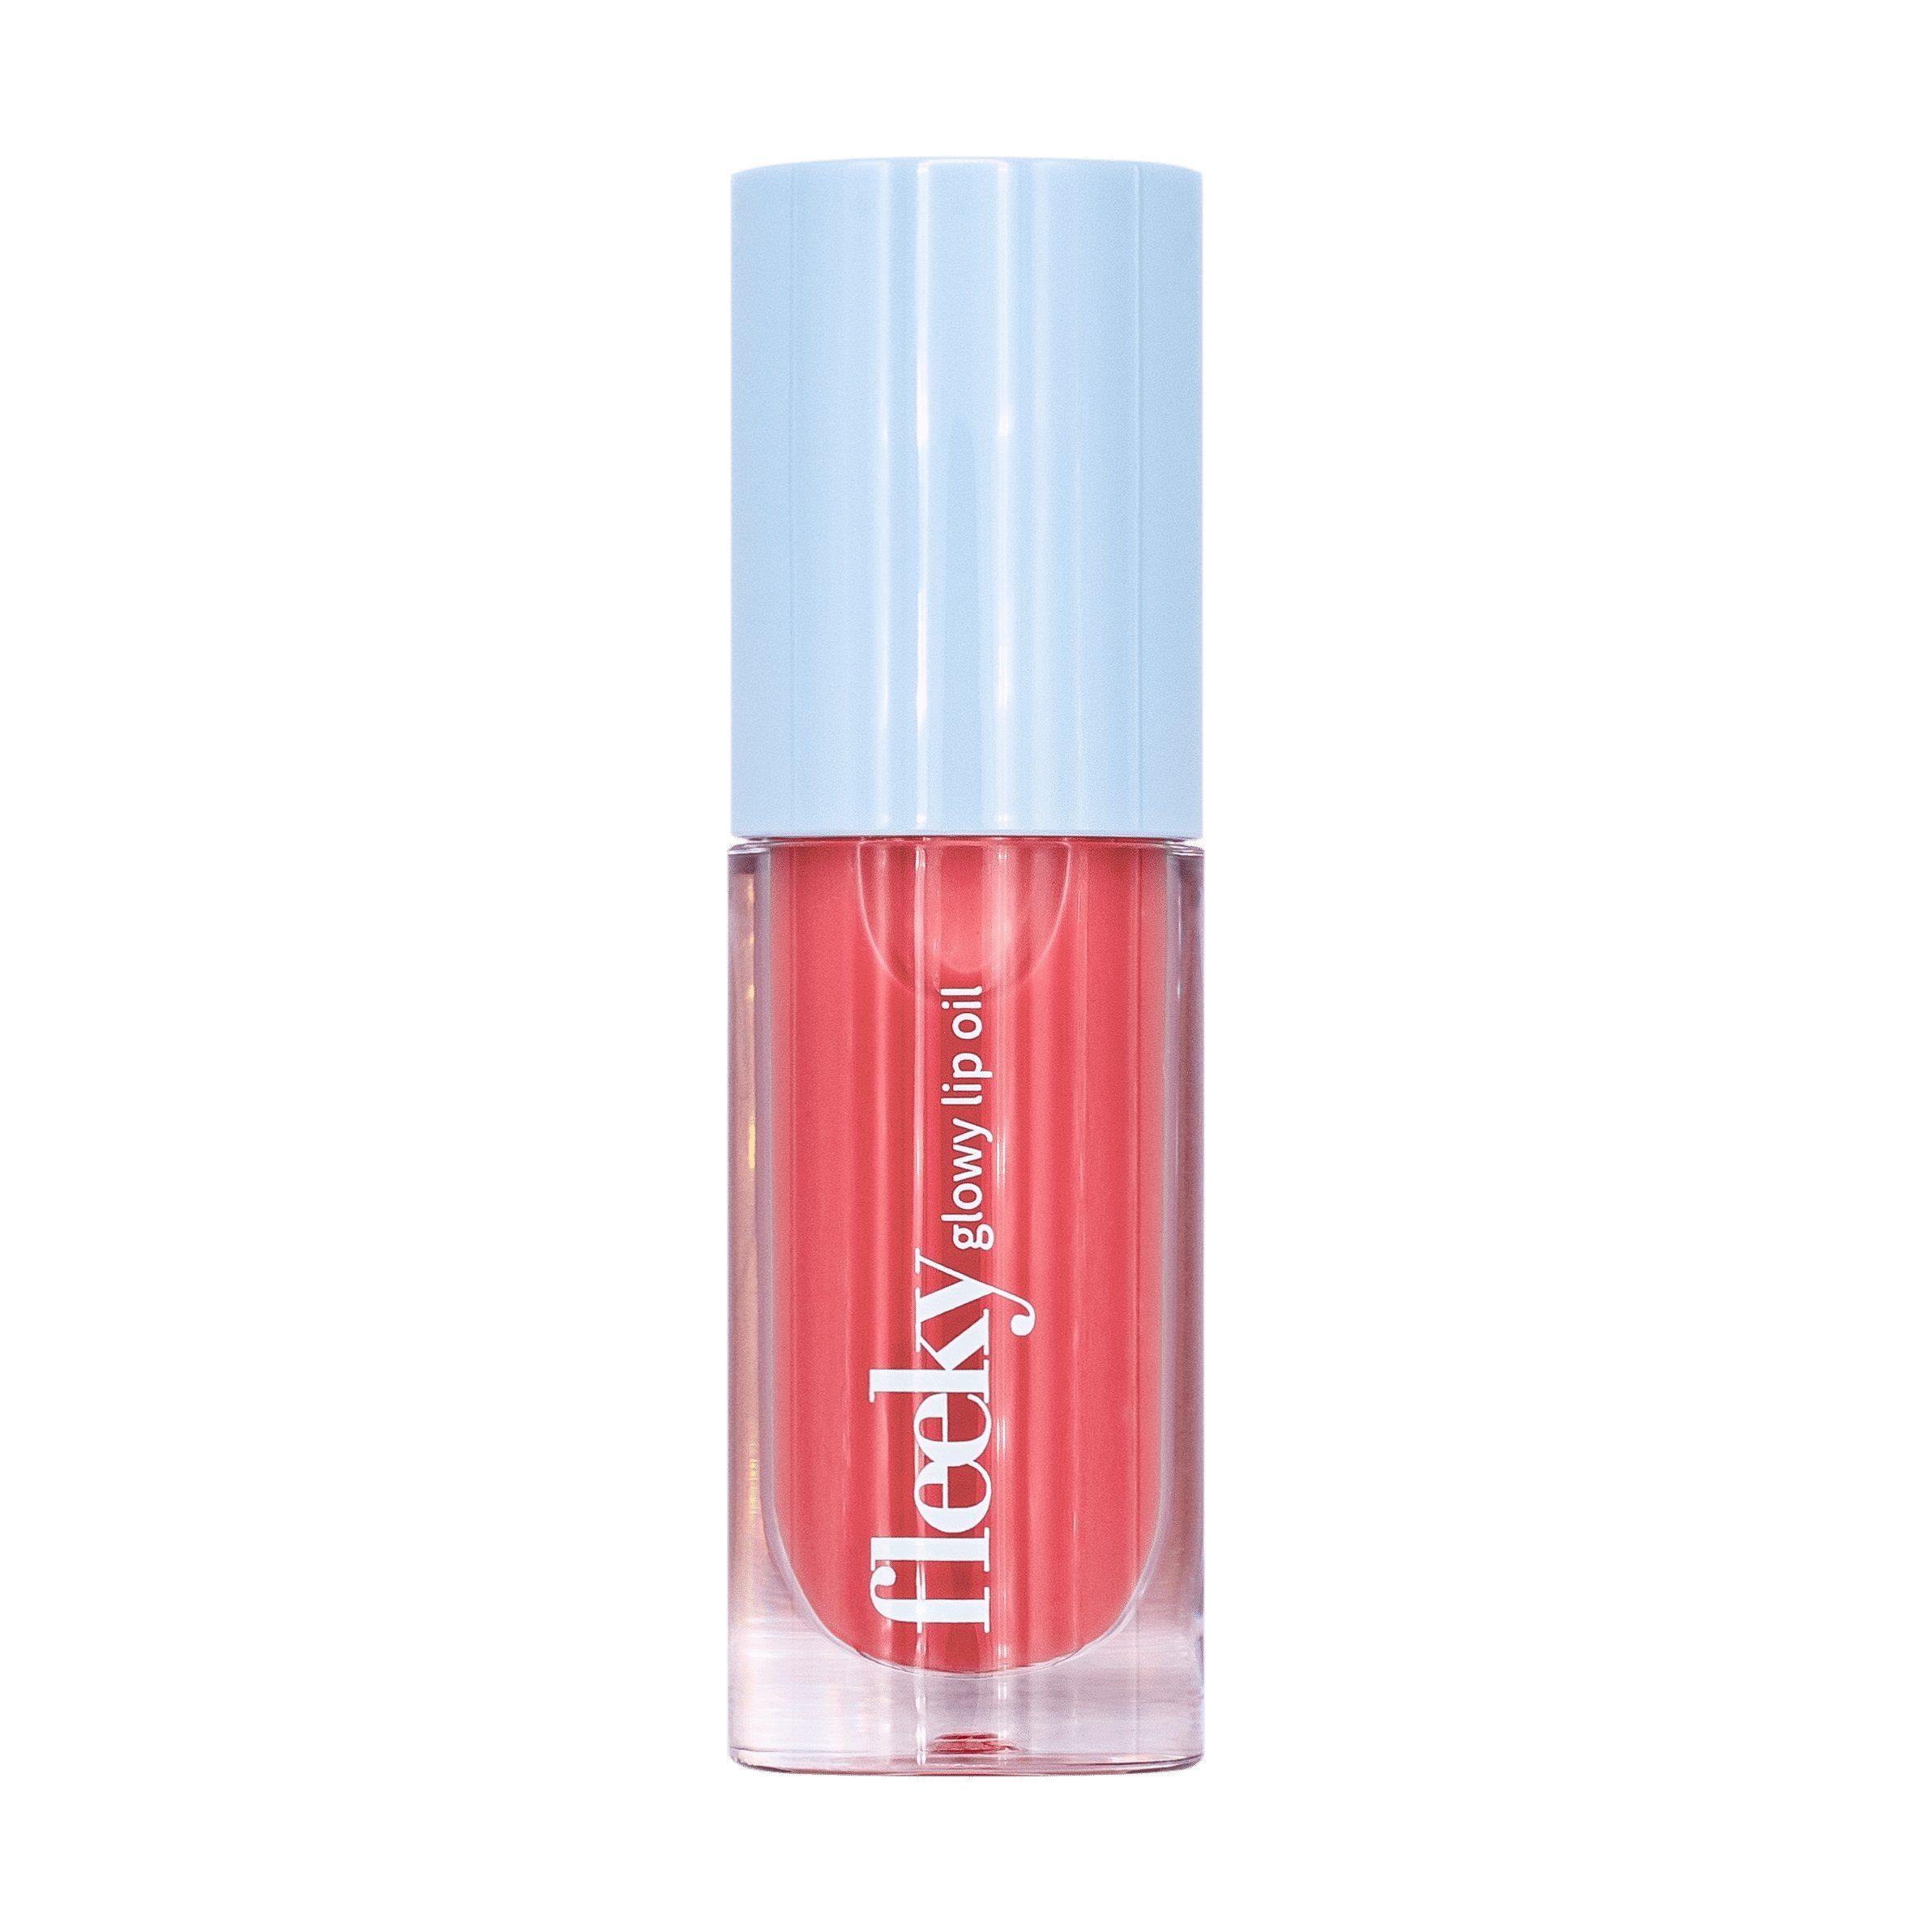 fleeky Lippenöl Glowy Lip Oil - Intensive Pflege mit verführerischem Glanz